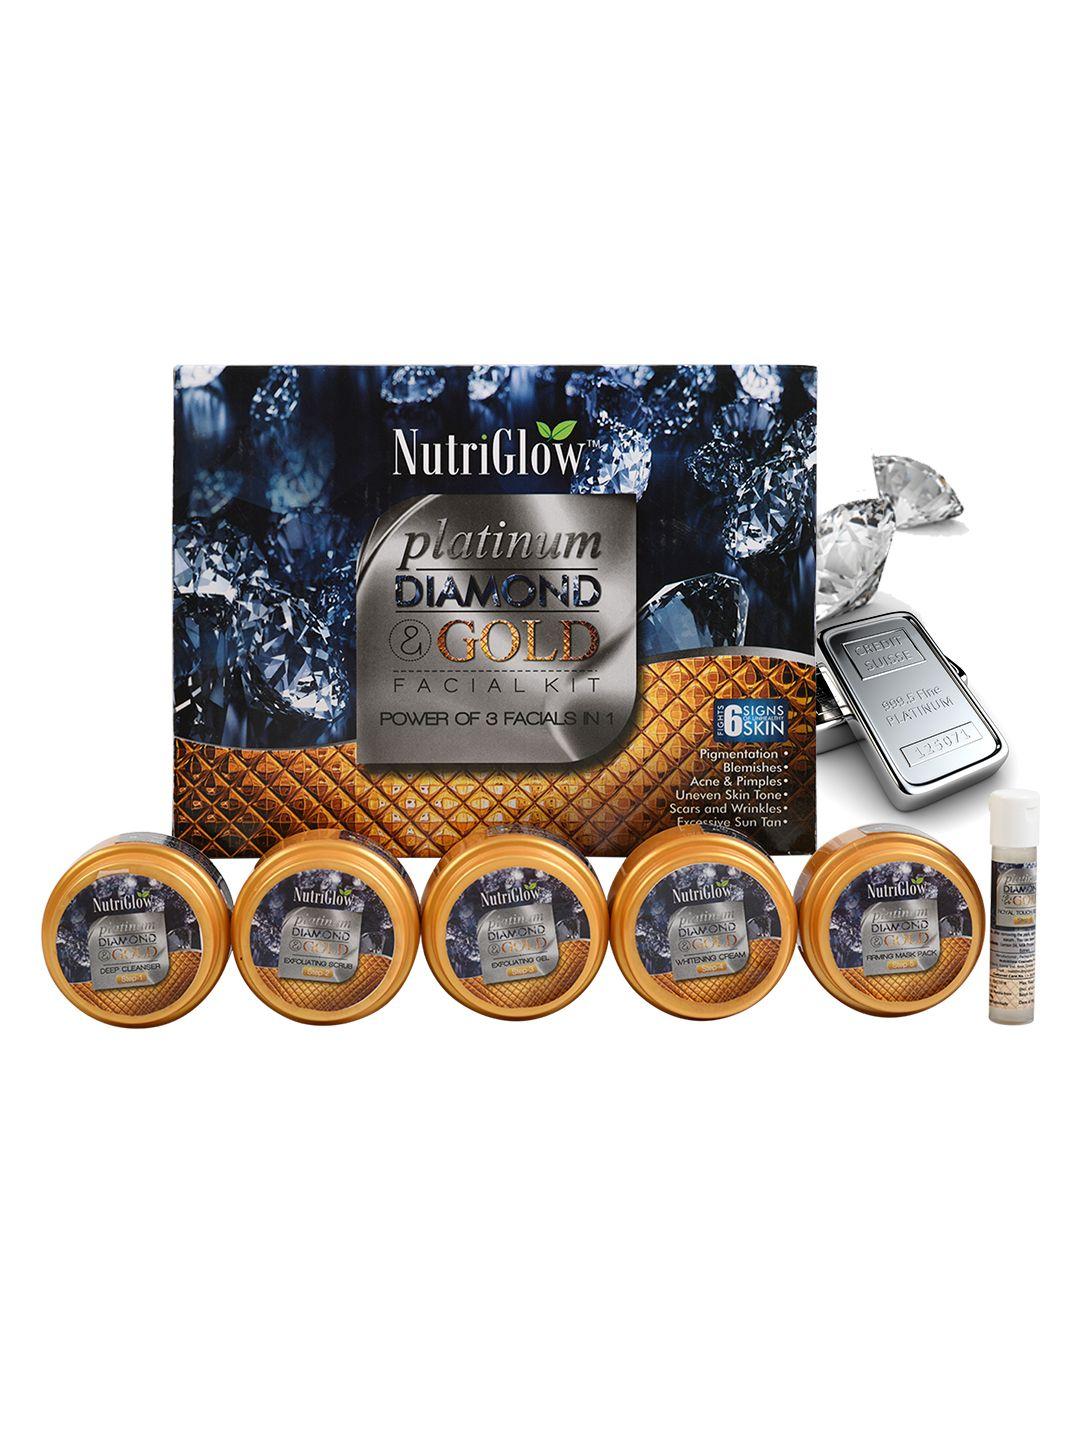 nutriglow sustainable power of 3 platinum, diamond & gold facial kit